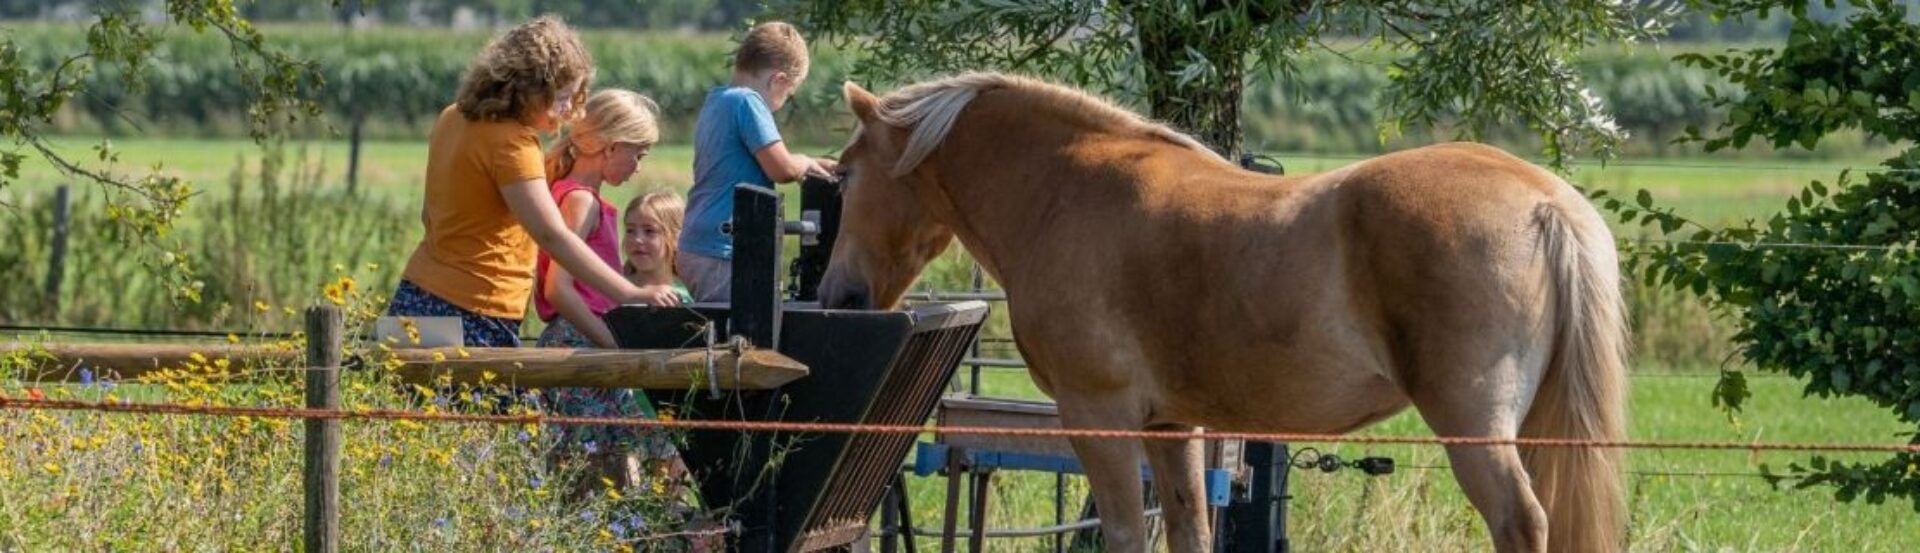 Kinderen geven paard eten op camping